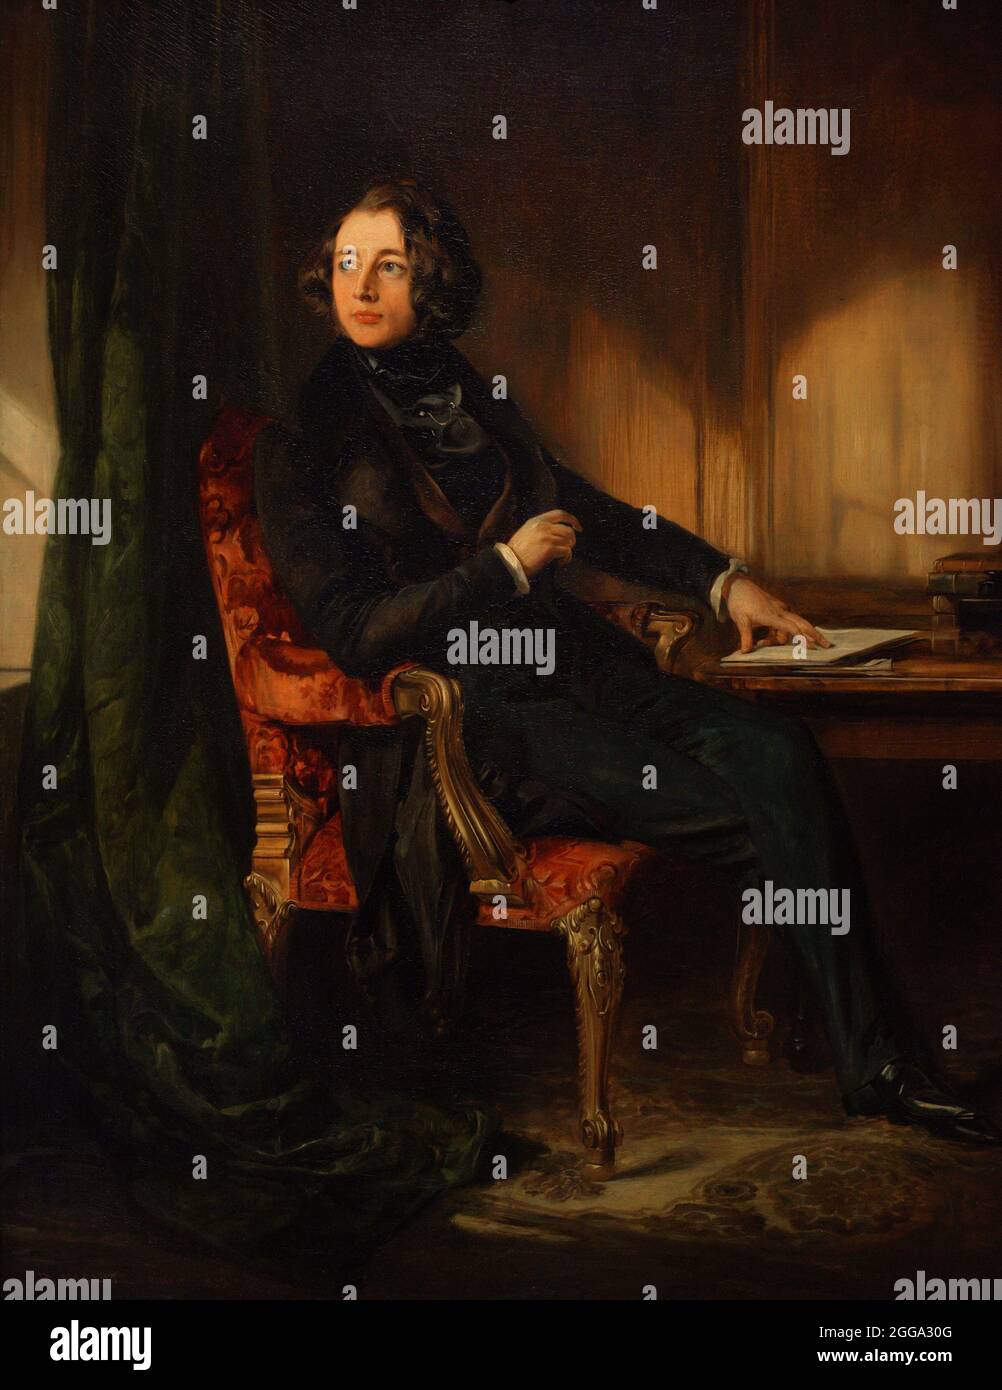 Charles Dickens (1812-1870). Romanziere inglese. Ritratto di Daniel Maclise (1806-1870). Olio su tela (91,4 x 71,4 cm), 1839. National Portrait Gallery. Londra, Inghilterra, Regno Unito. Foto Stock